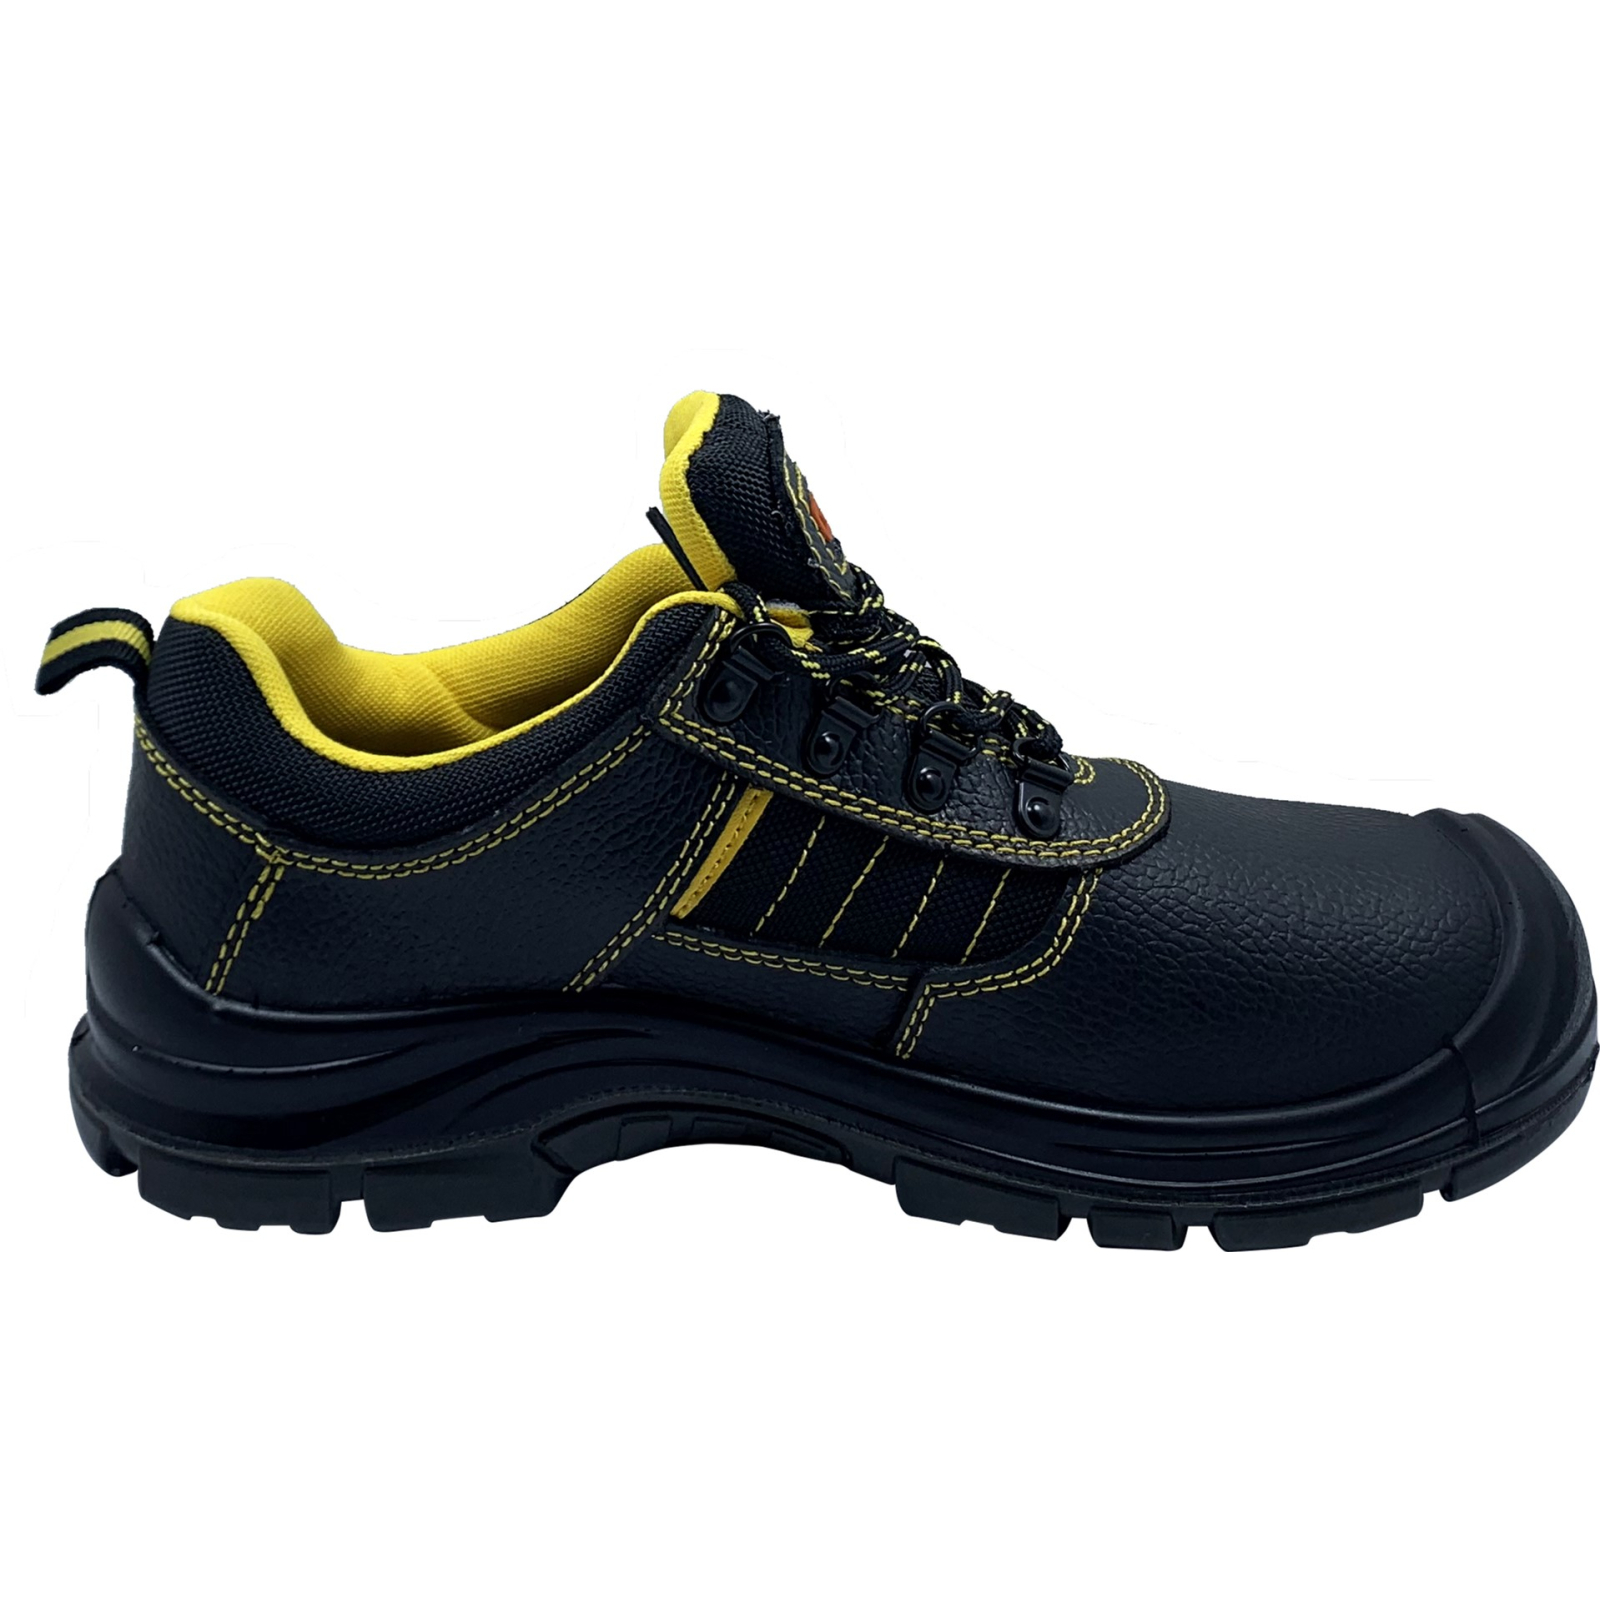 Ботинки рабочие GTM SM-078 мет. носок, р.44 с желтыми вставками (SM-078-44) изображение 2